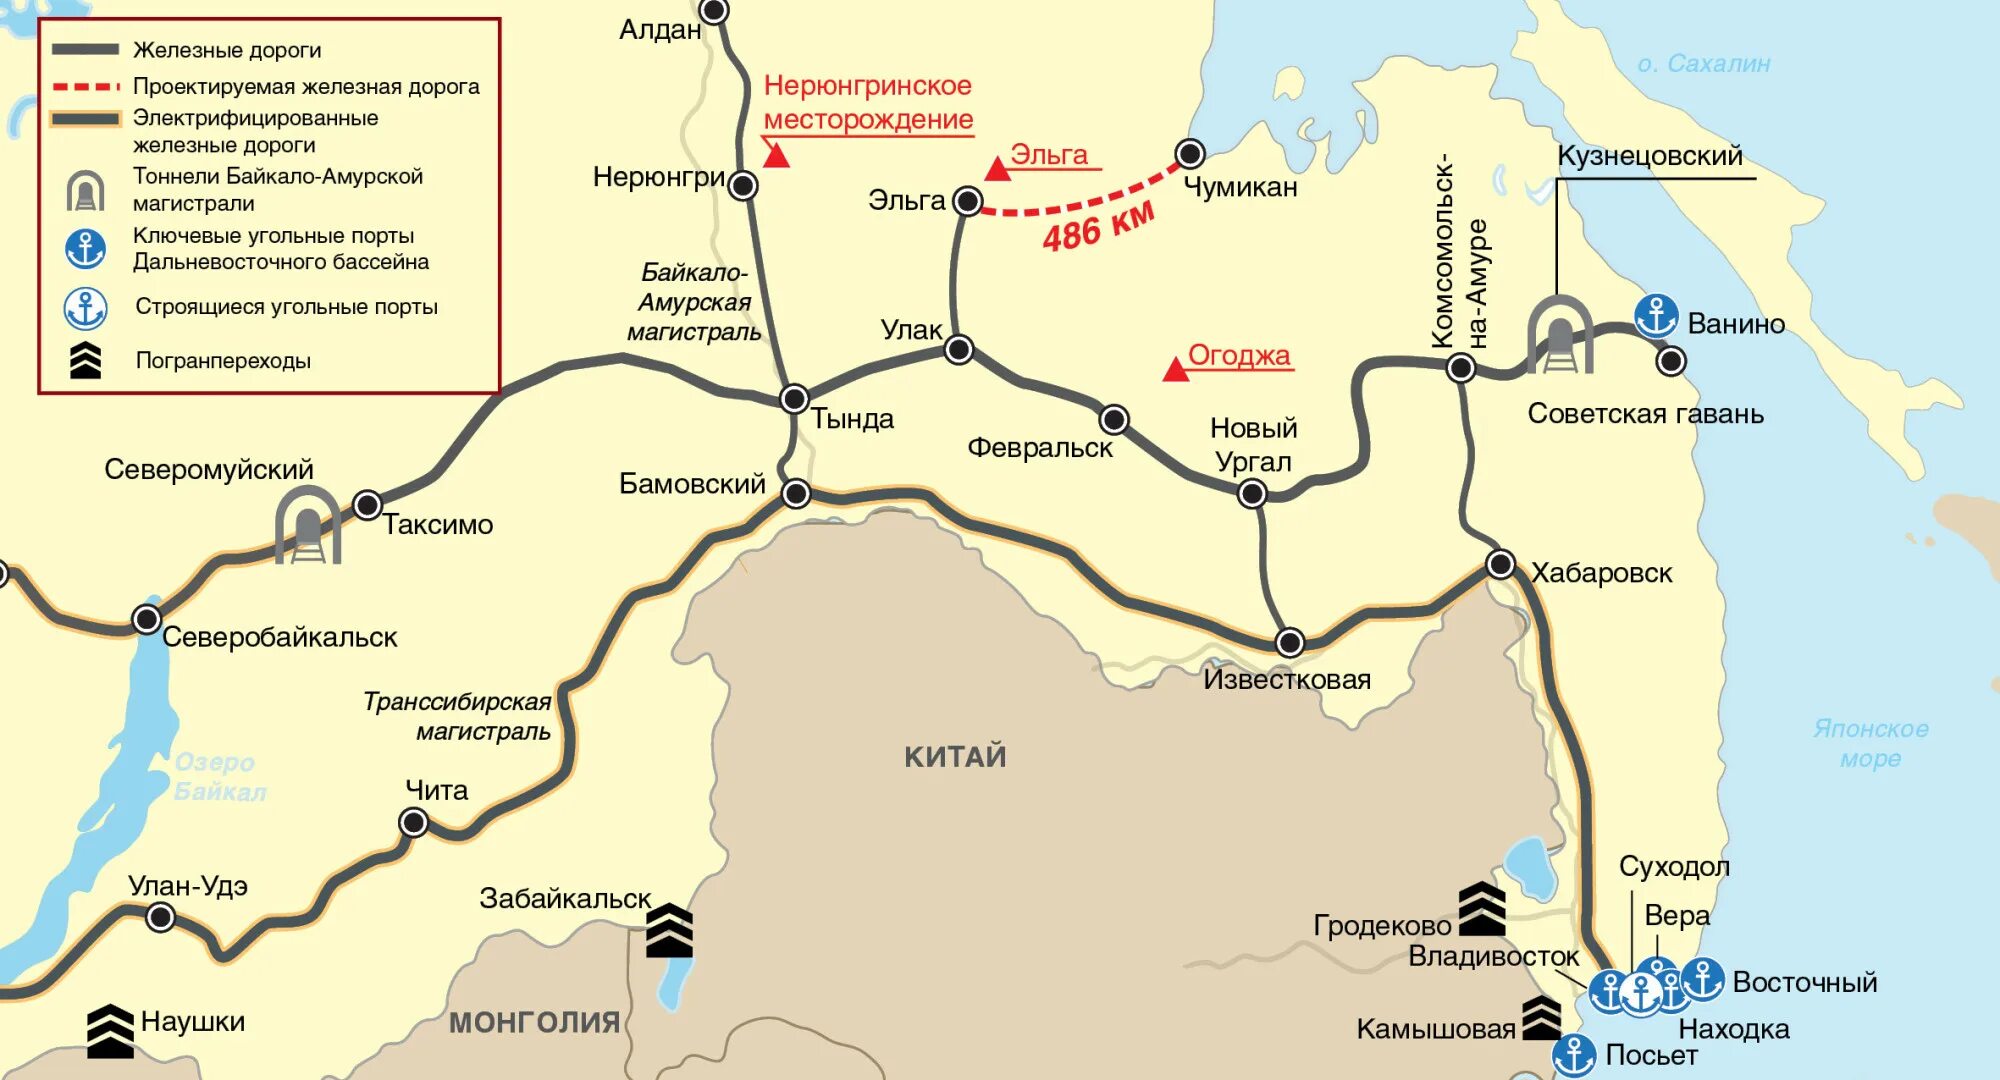 Находка путь. Эльгинское угольное месторождение на карте Якутия.